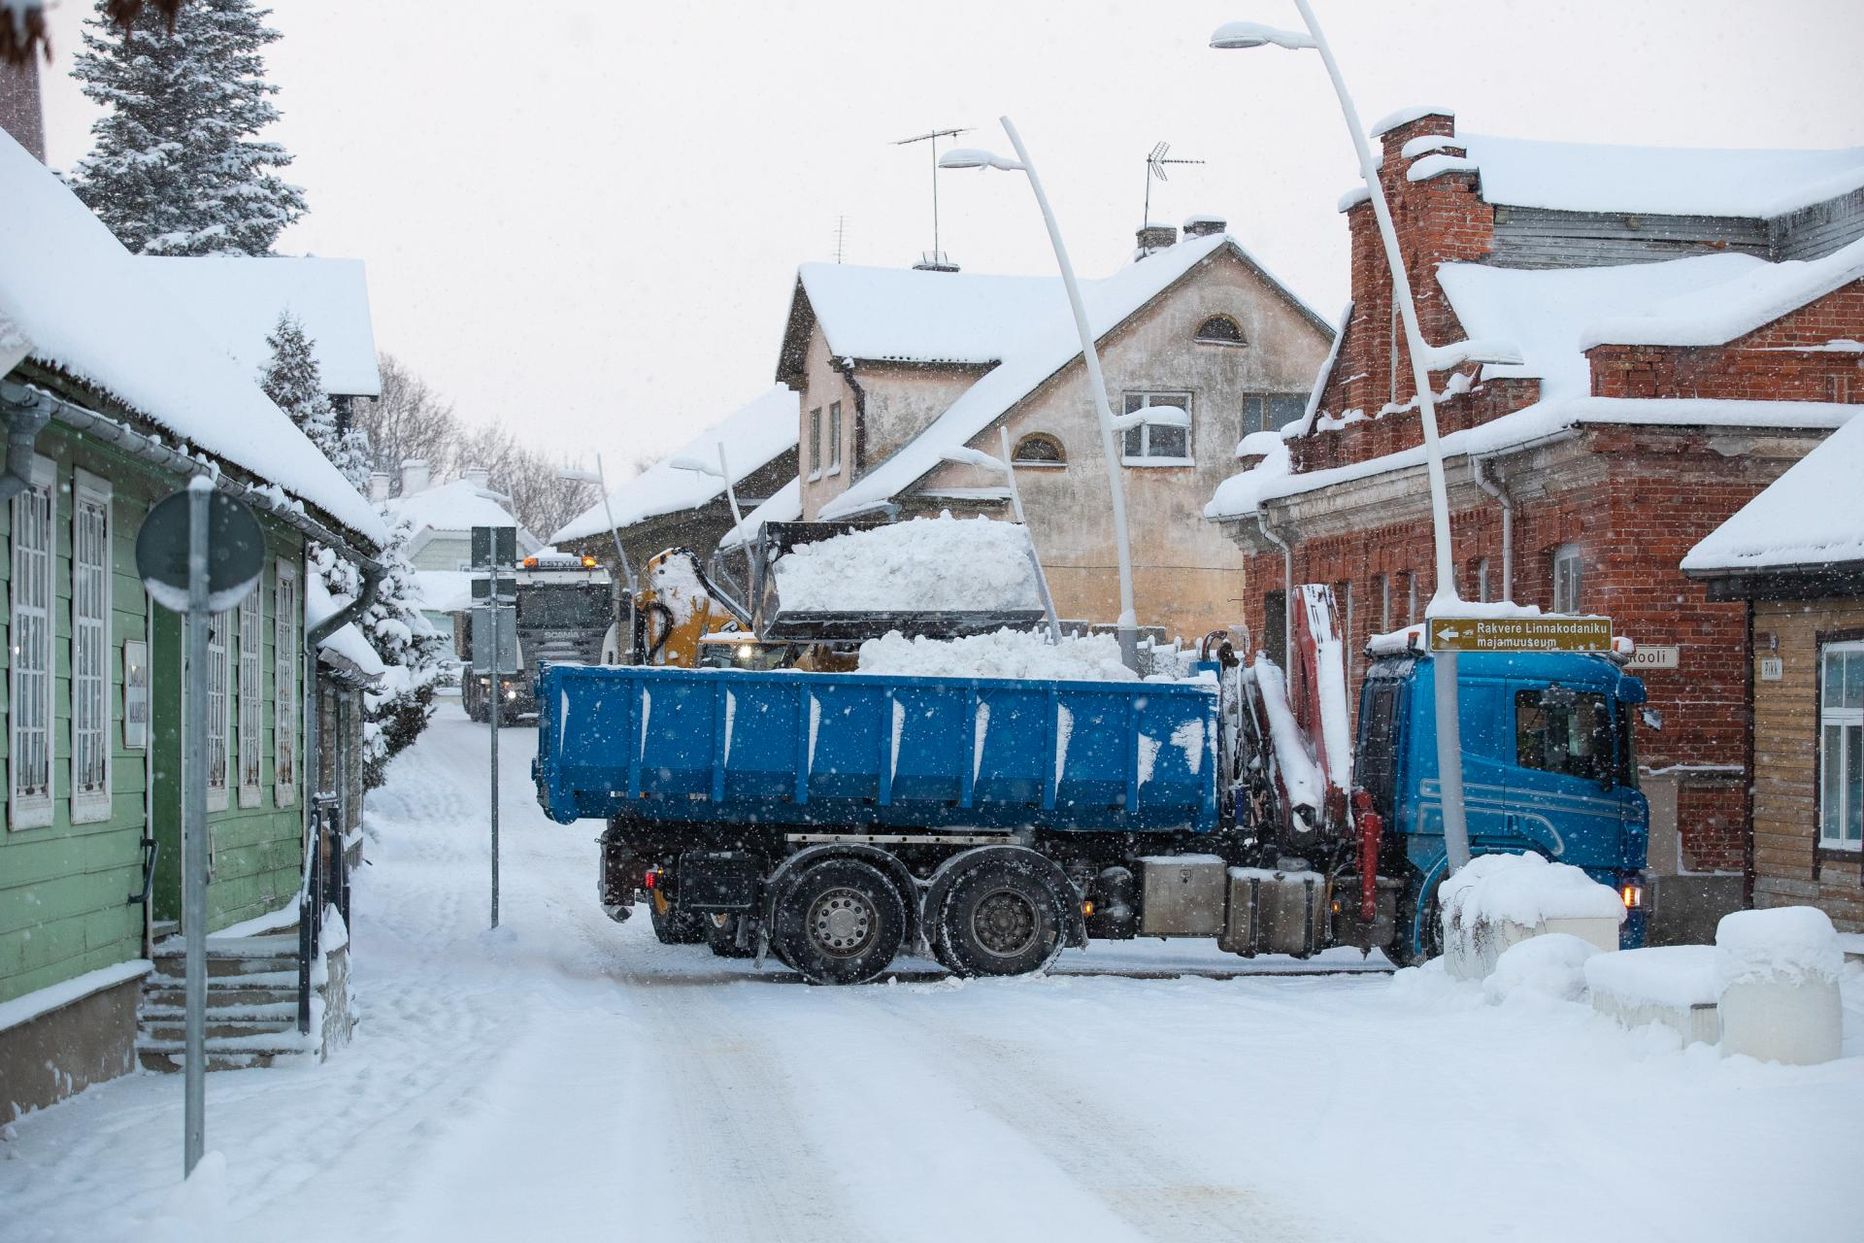 Rakveres Pikal tänaval on lund koristada keeruline, sest kõnniteel on hulk tänavamööblit.